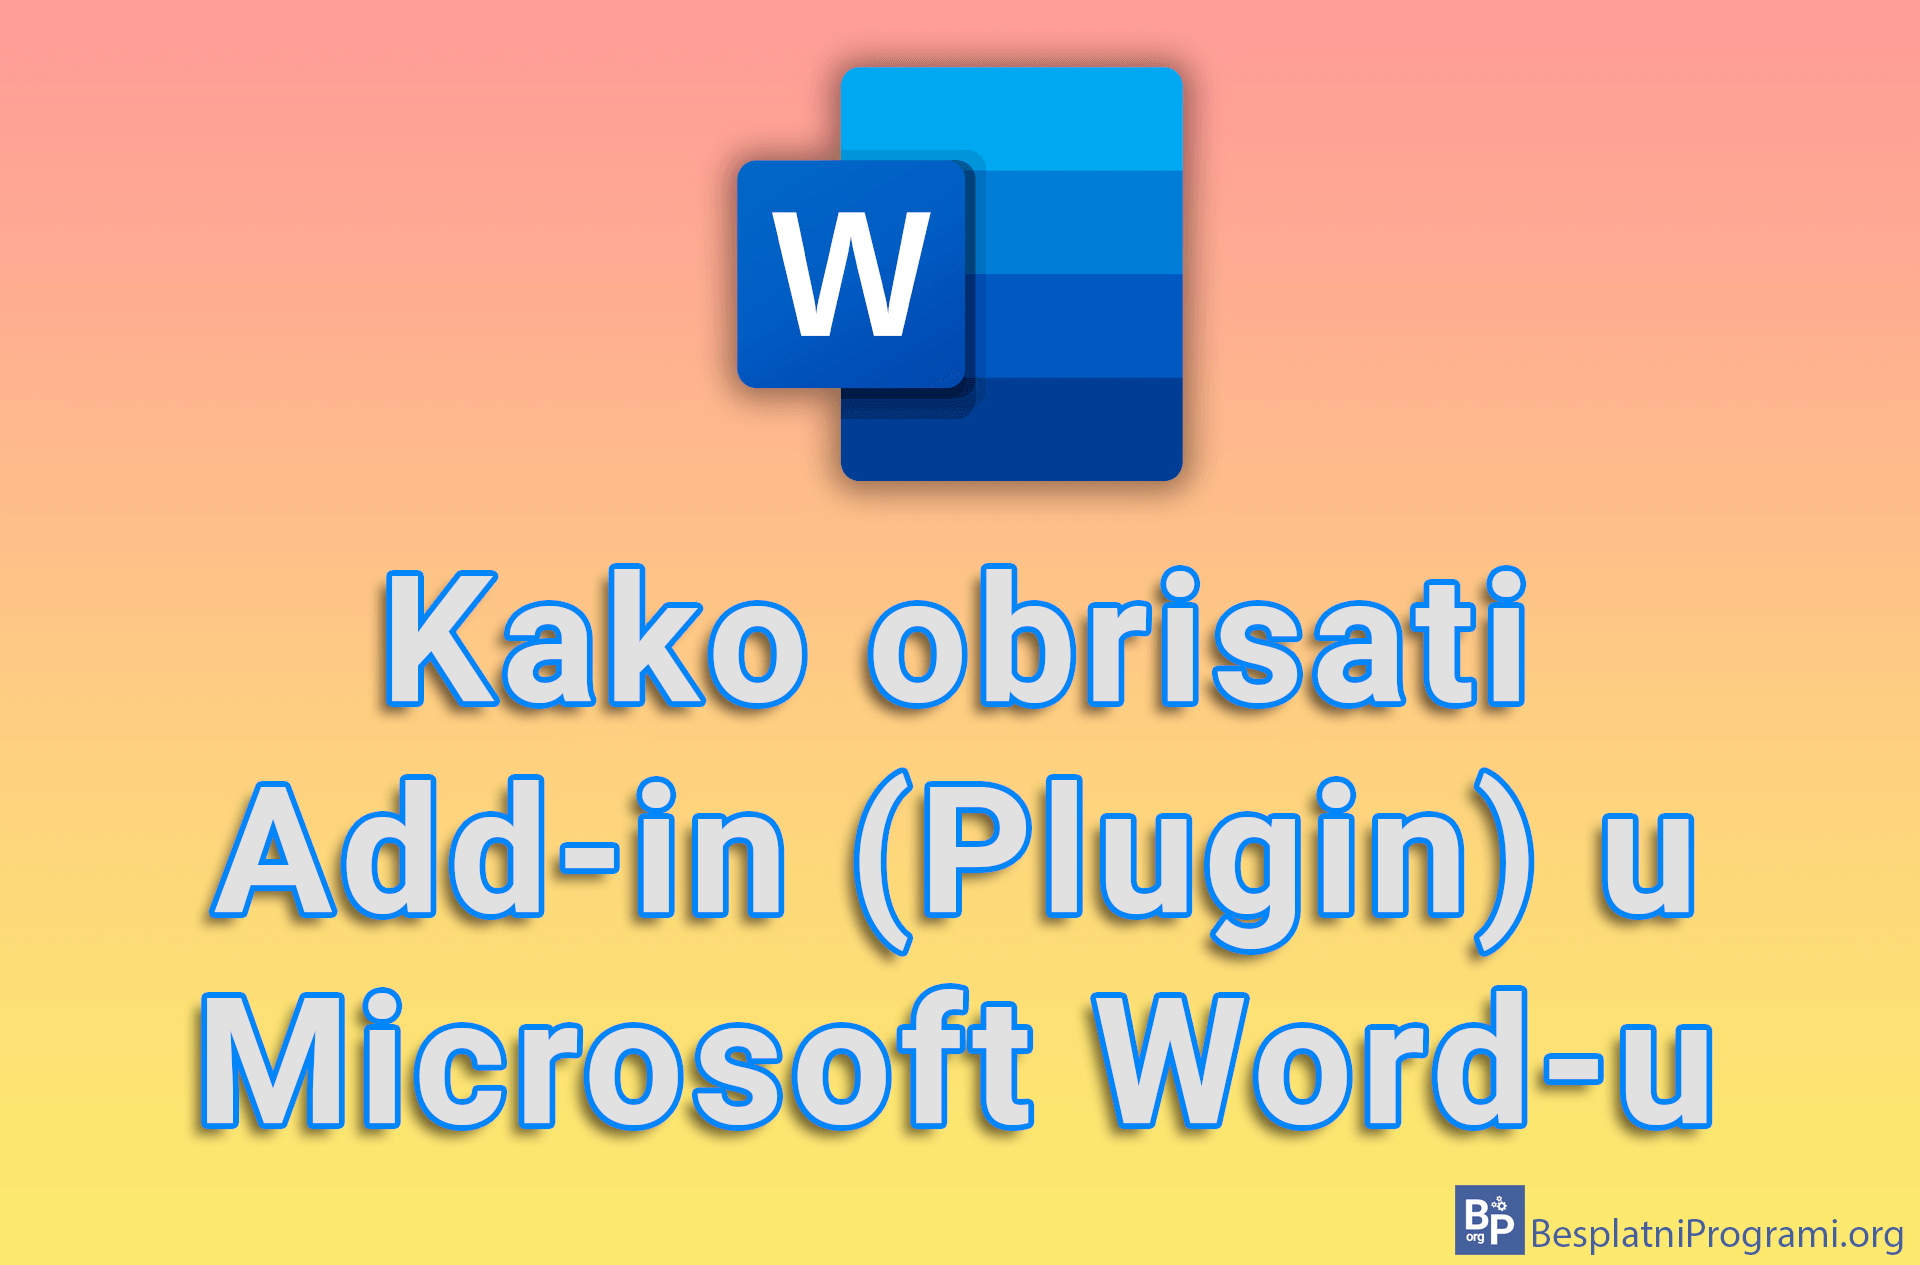 Kako obrisati Add-in (Plugin) u Microsoft Word-u